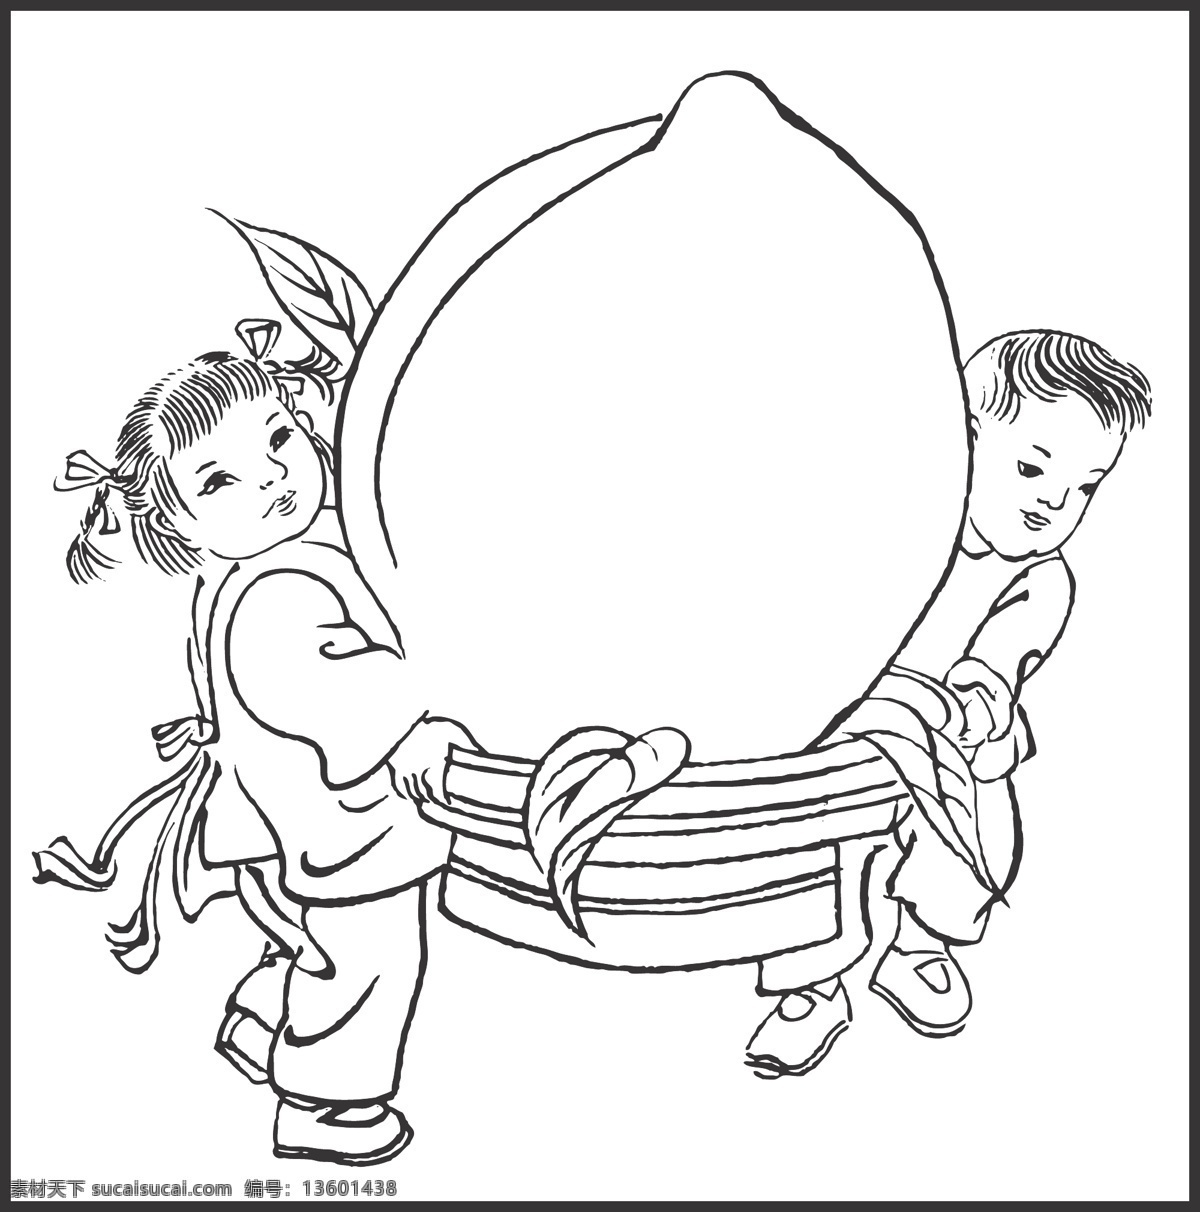 贺寿 桃子 丰收 喜庆 儿童 可爱 大桃 线条 矢量 传统 装饰 插画 白描 人物图库 儿童幼儿